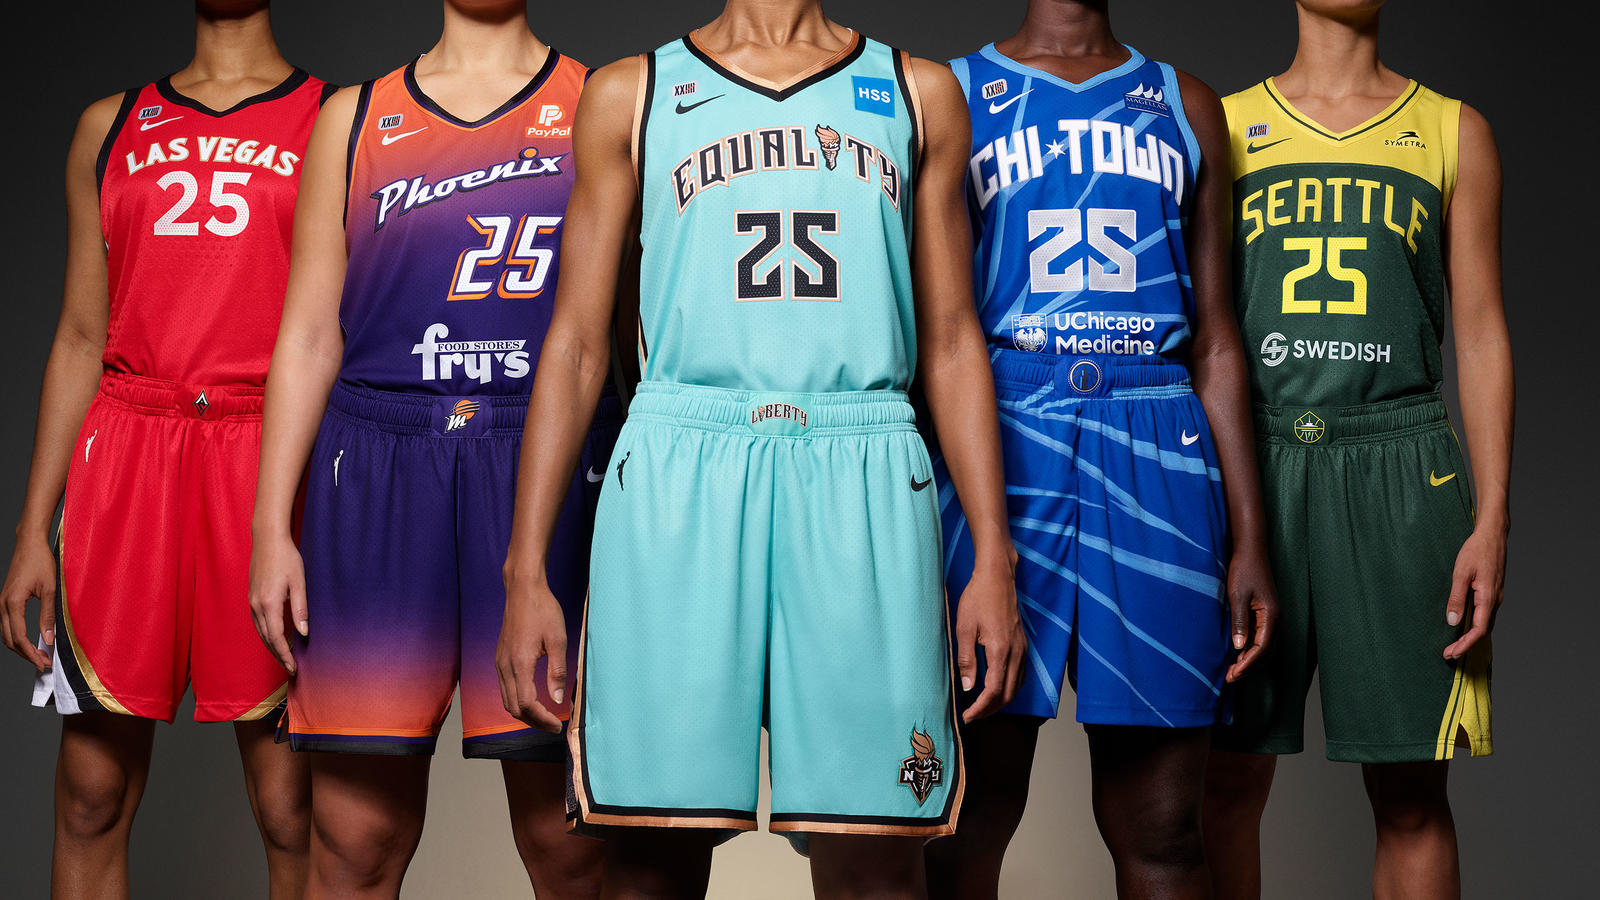 WNBA's Nike Jerseys